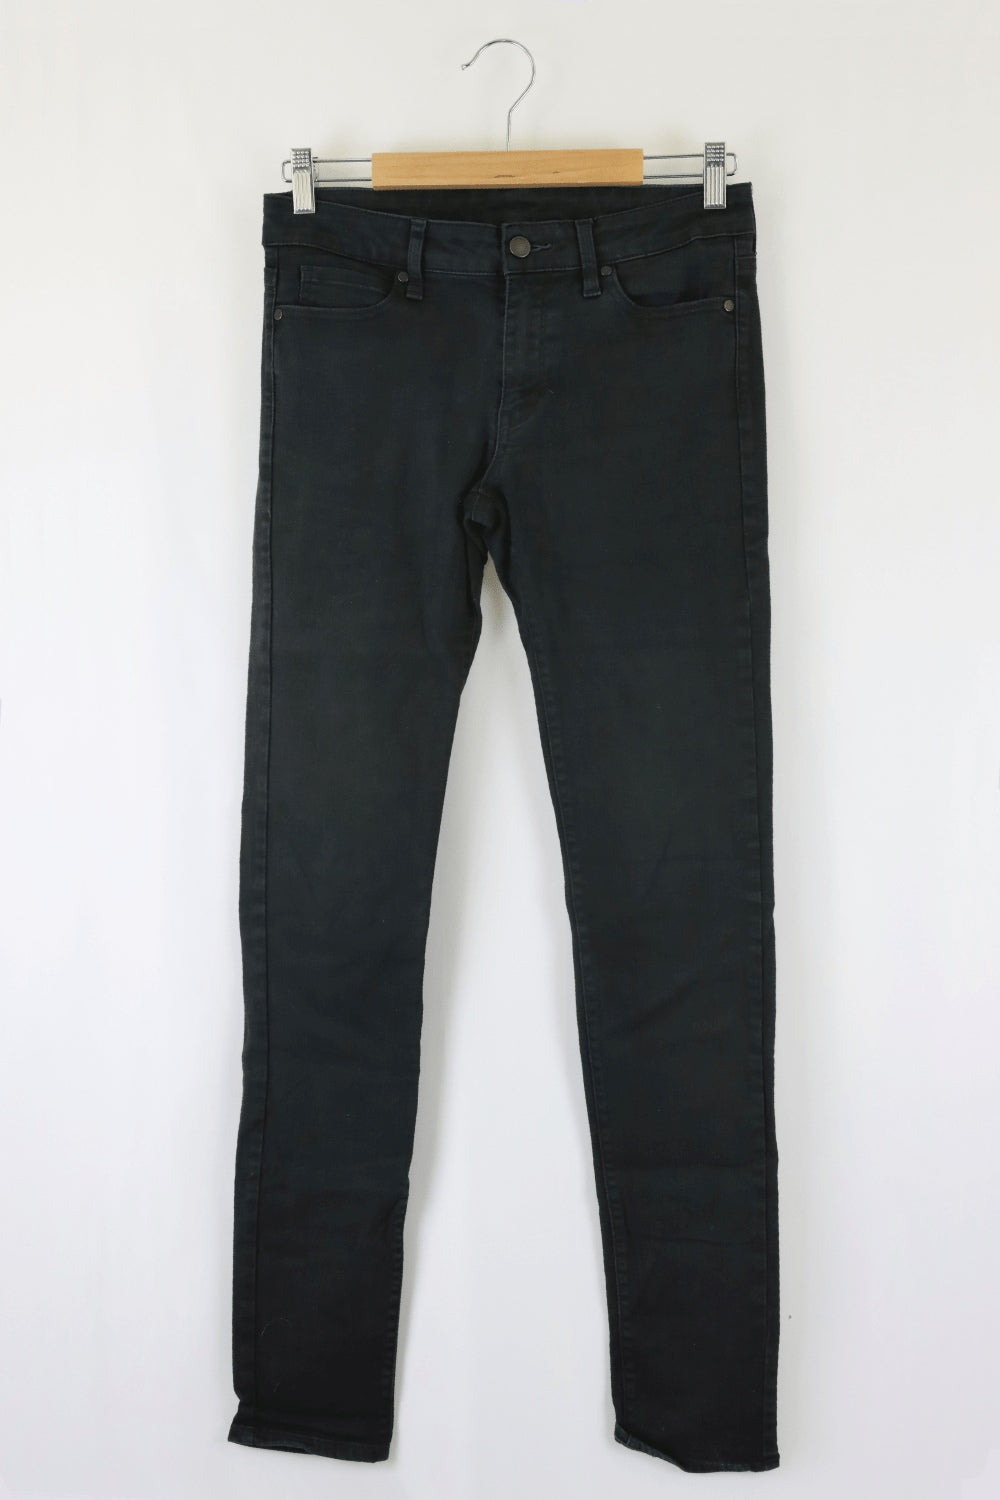 Uniqlo Black Jeans 10